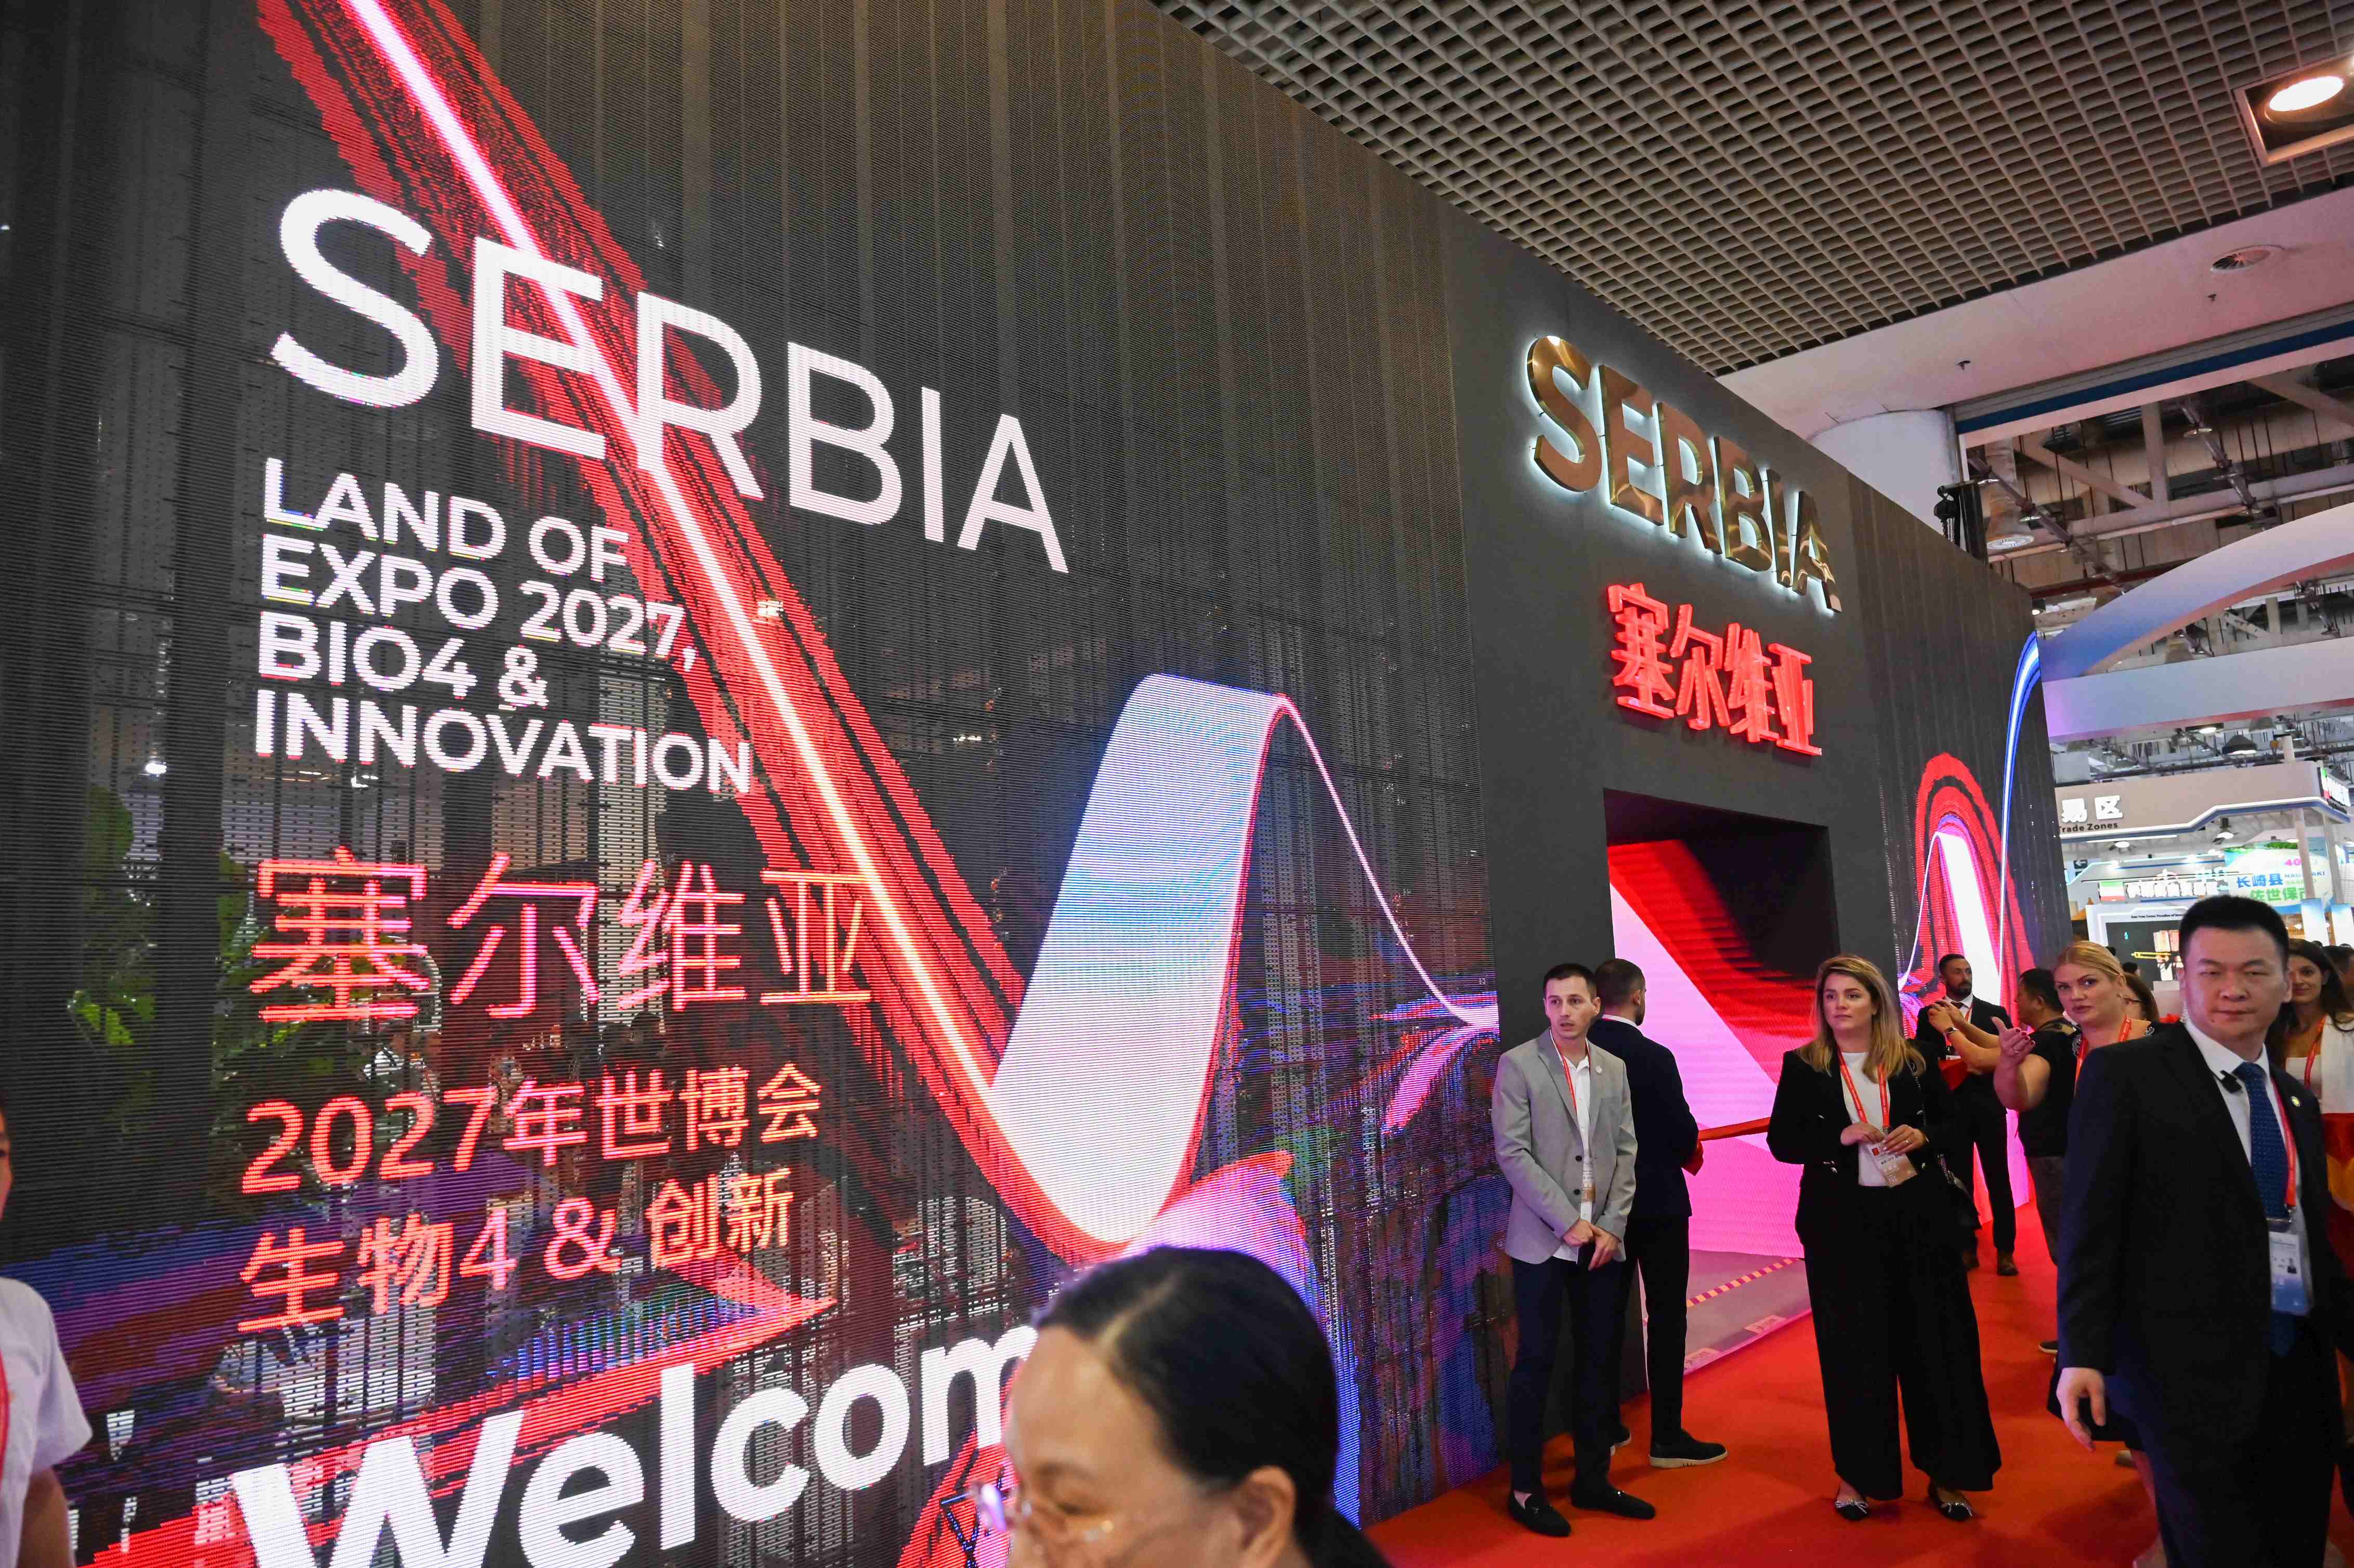 Гојковић отворила национални Павиљон Србије на Кинеском сајму инвестиција и трговине